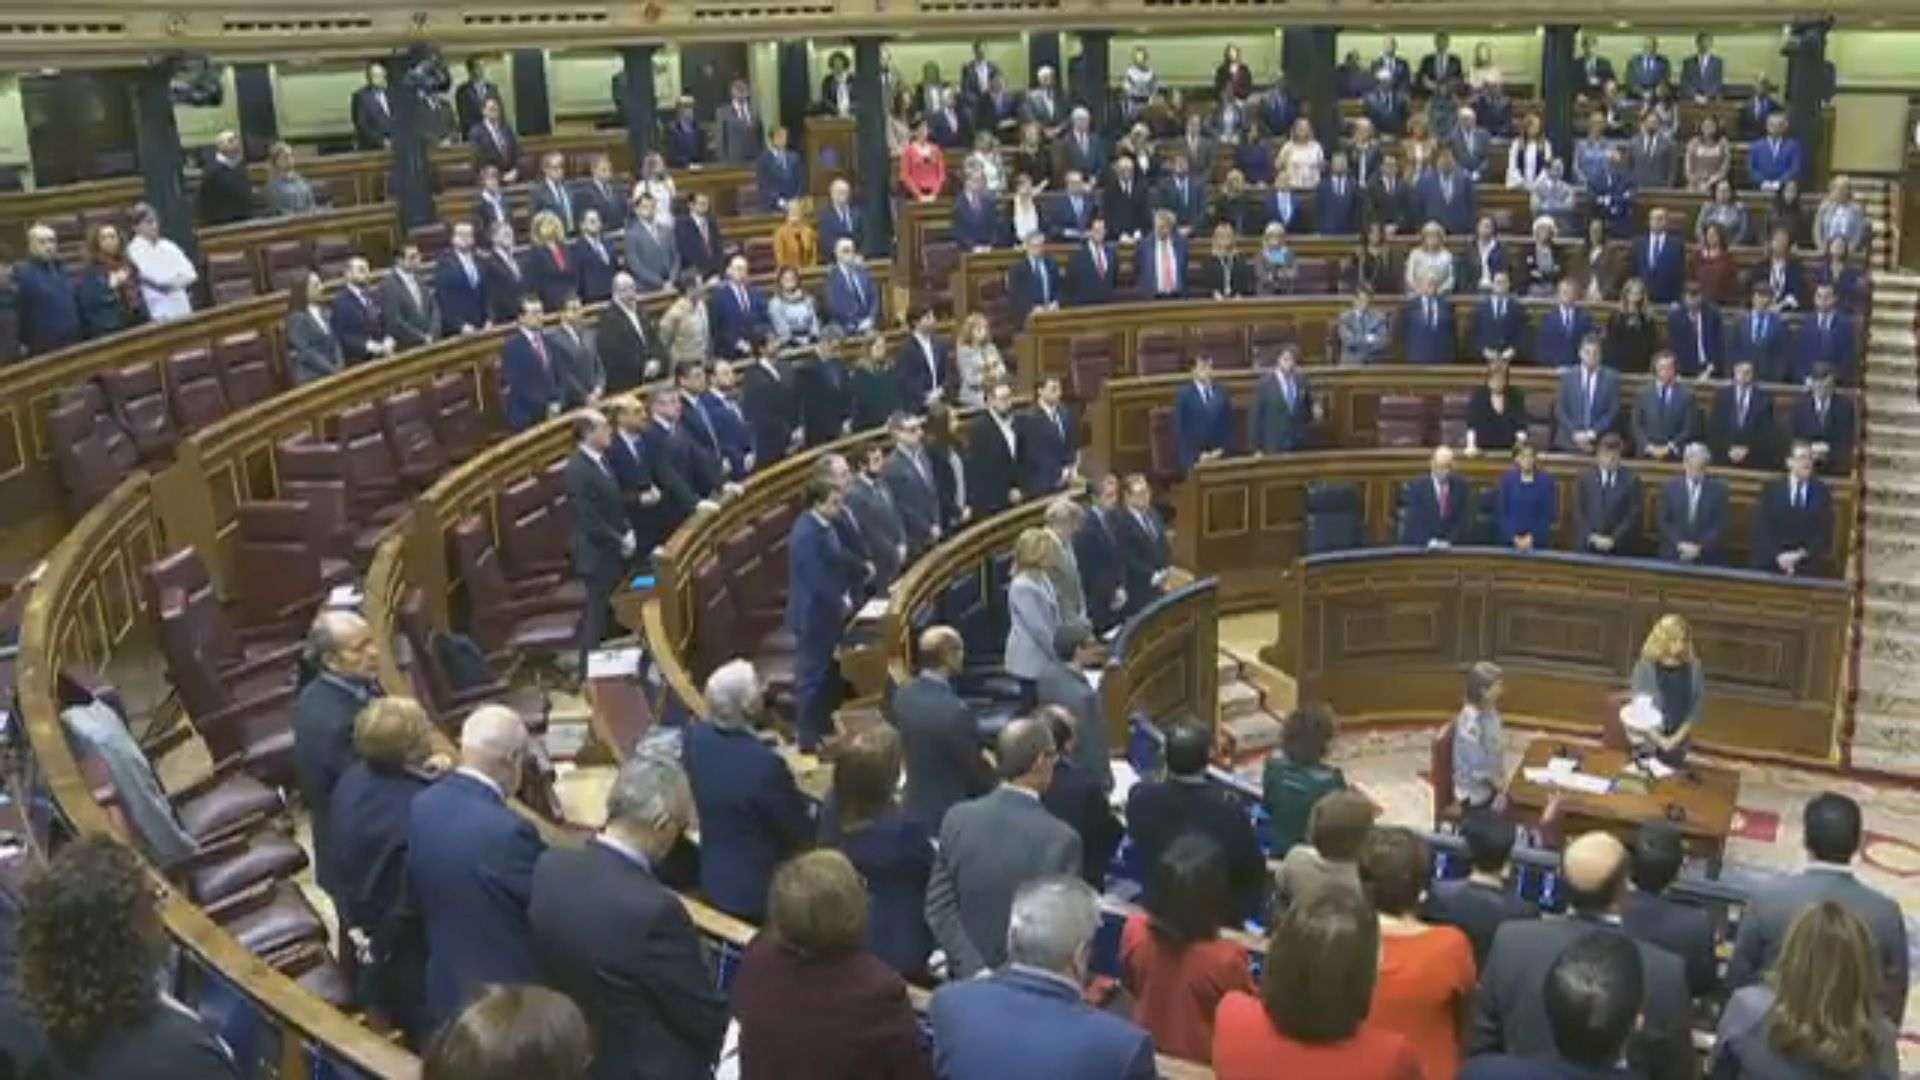 Vídeo: Minuto de silencio en el Congreso con la ausencia de Unidos Podemos